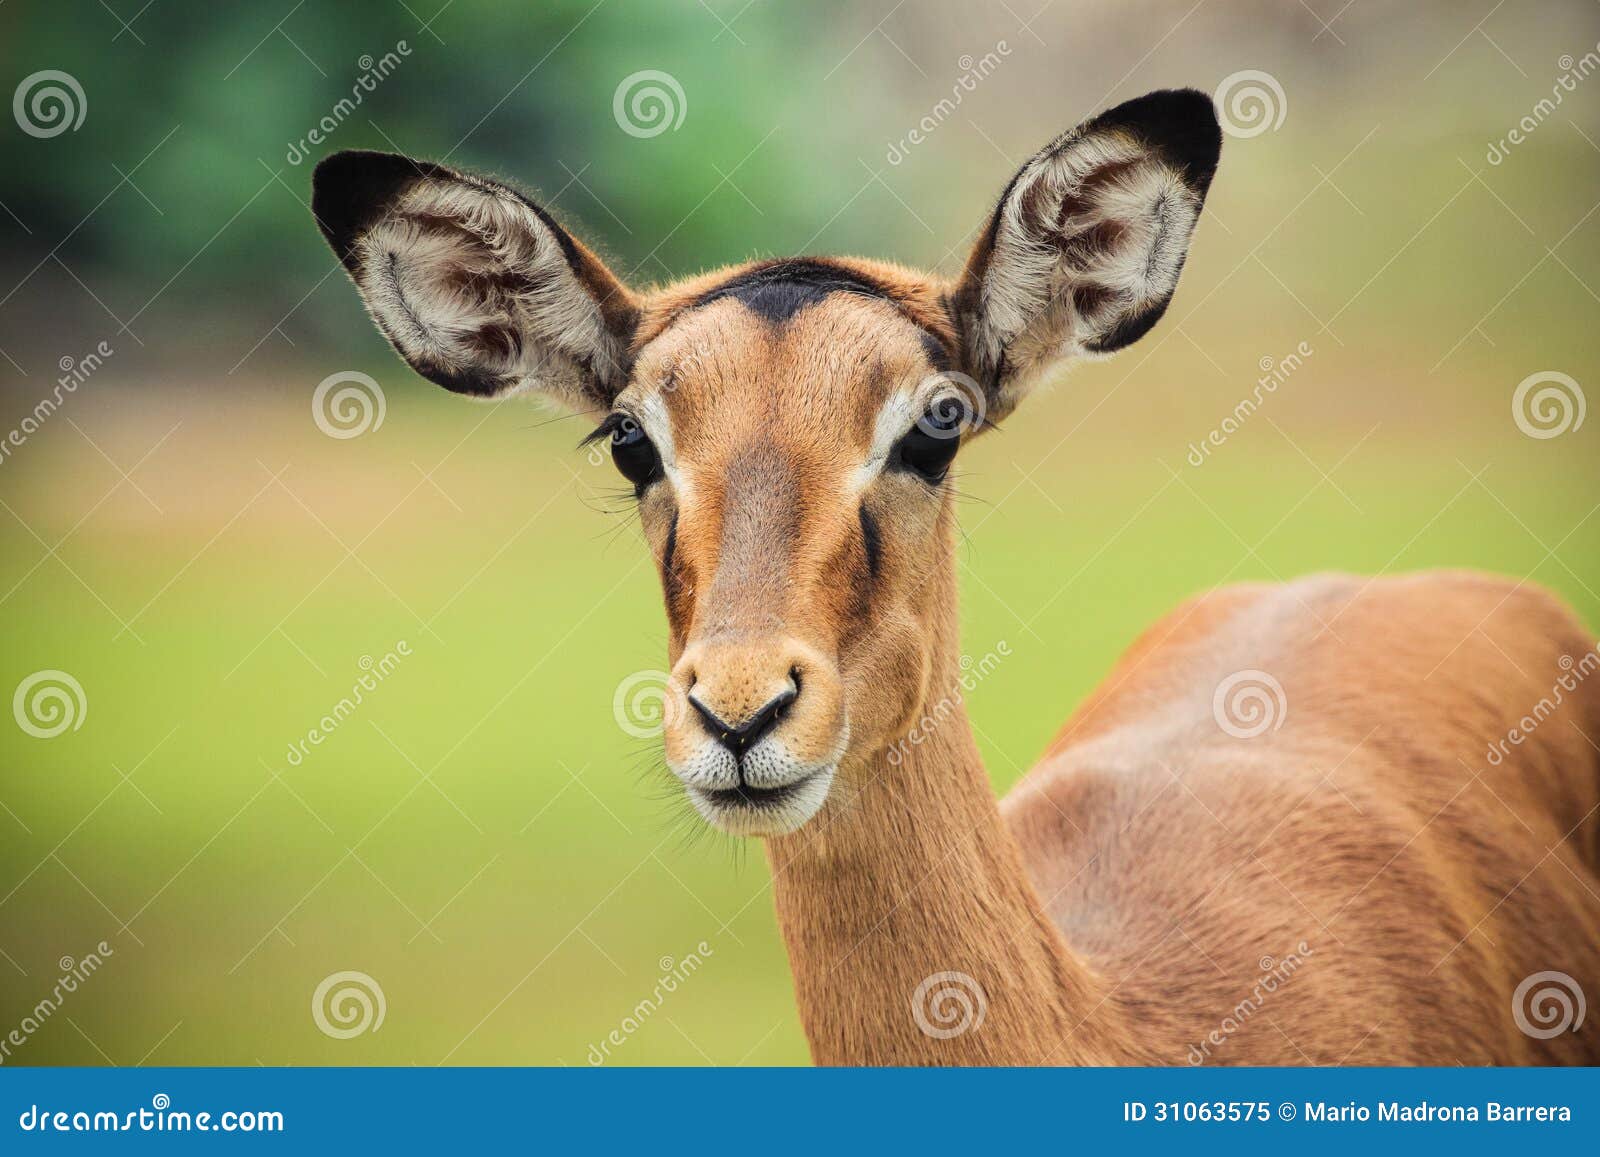 female impala